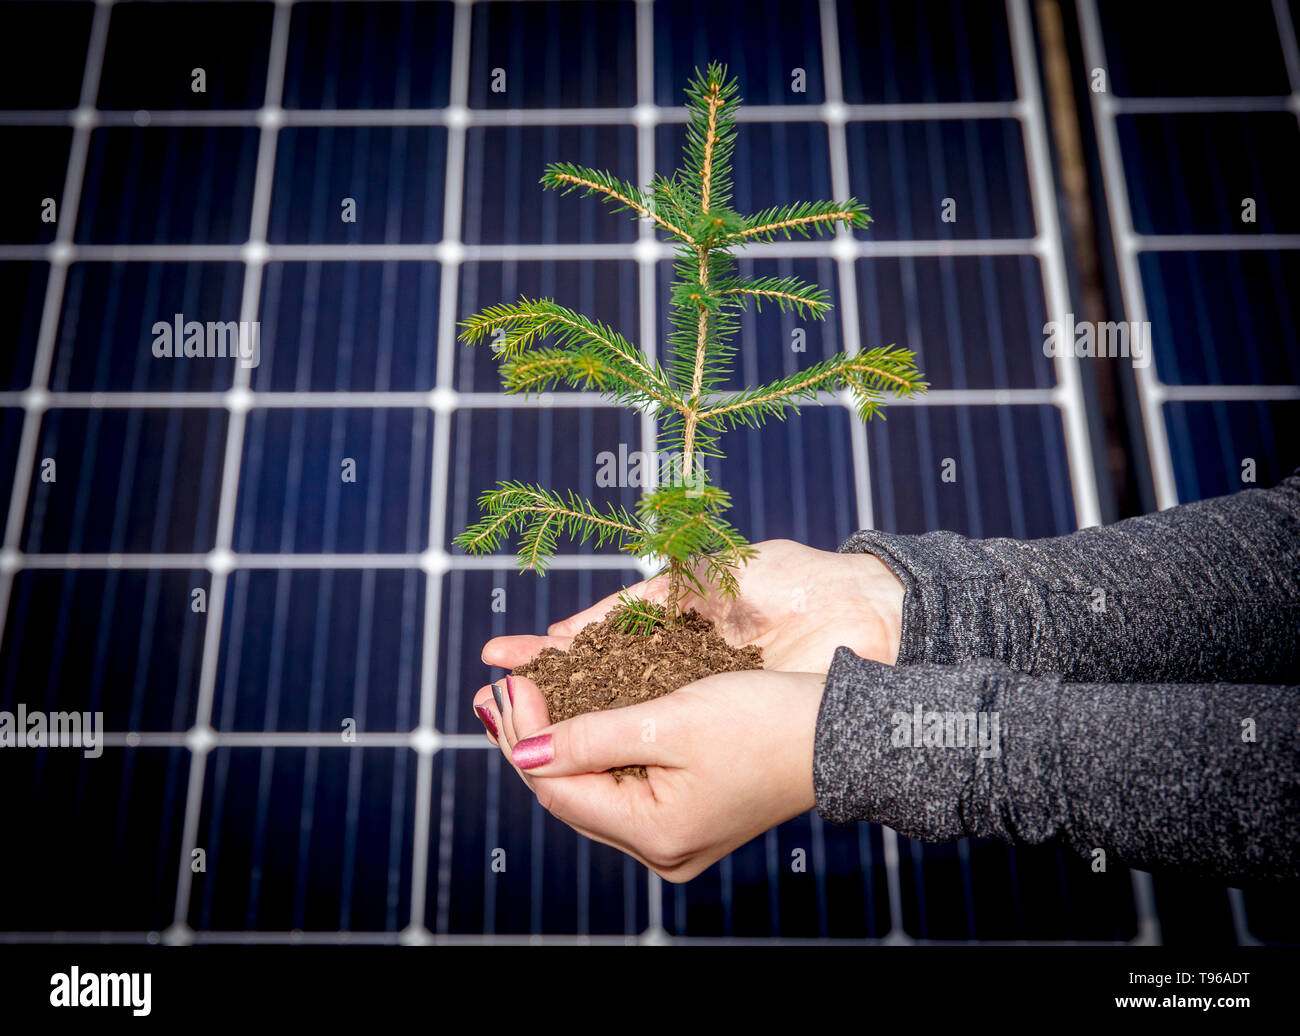 Natur freundlich Living Green Lifestyle, nachhaltiges Energiekonzept. Händen halten Haufen Erde und Baum, blau solar panel Zellen auf dem Hintergrund Fichte, Stockfoto